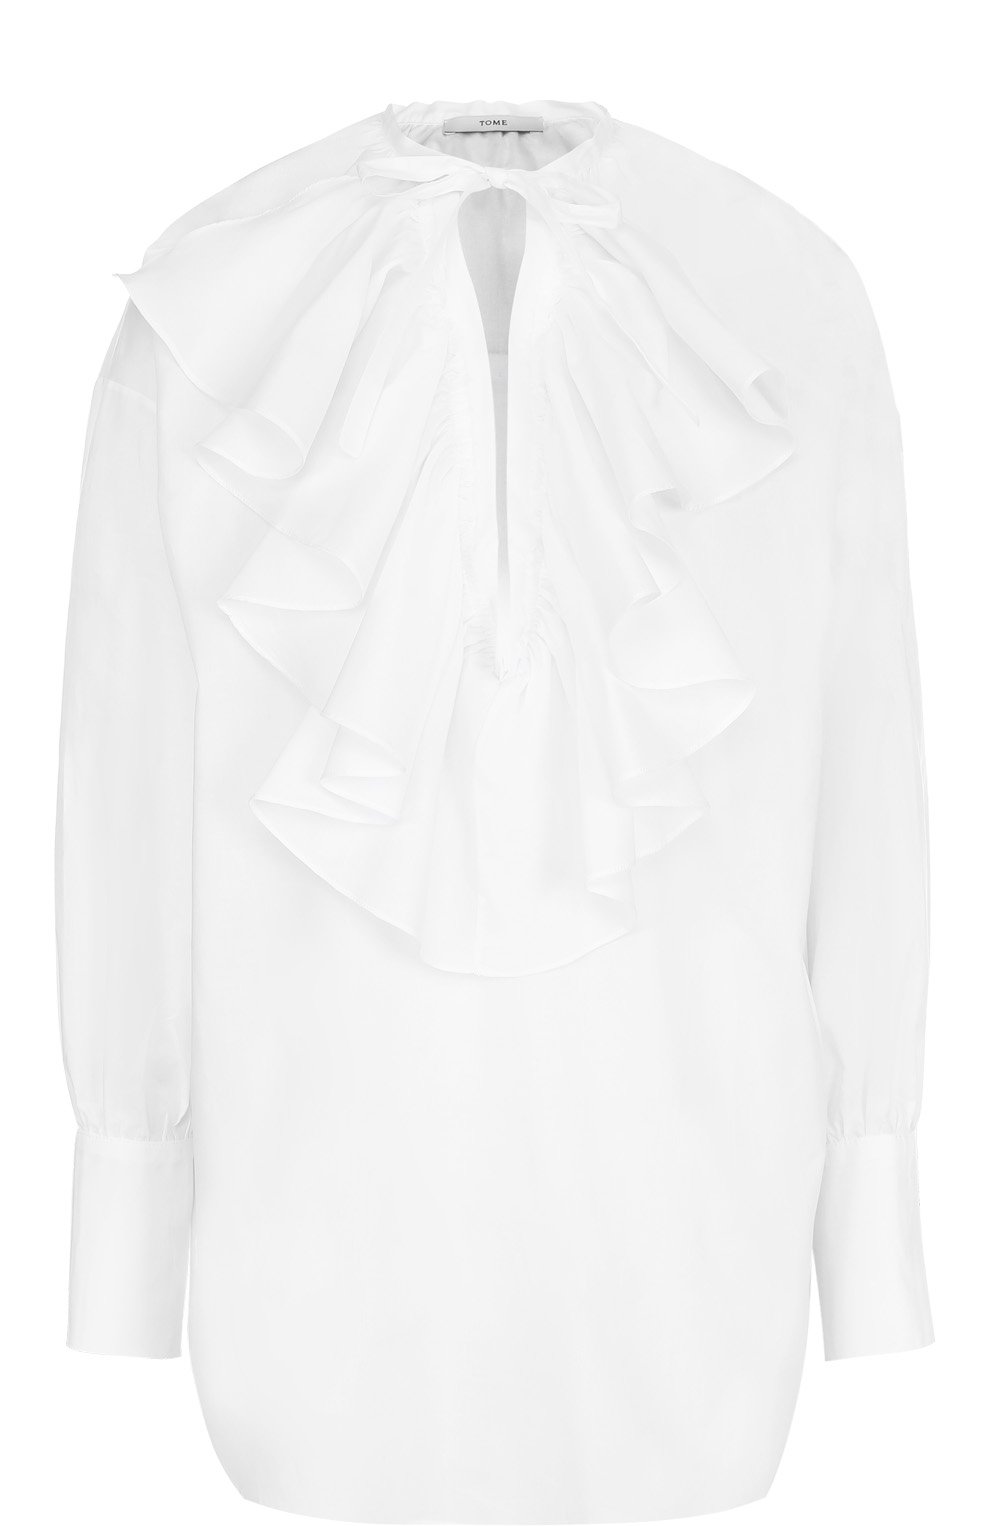 Блузы Tome, Хлопковая блуза свободного кроя с оборками Tome, США, Белый, Хлопок: 100%;, 2248378  - купить